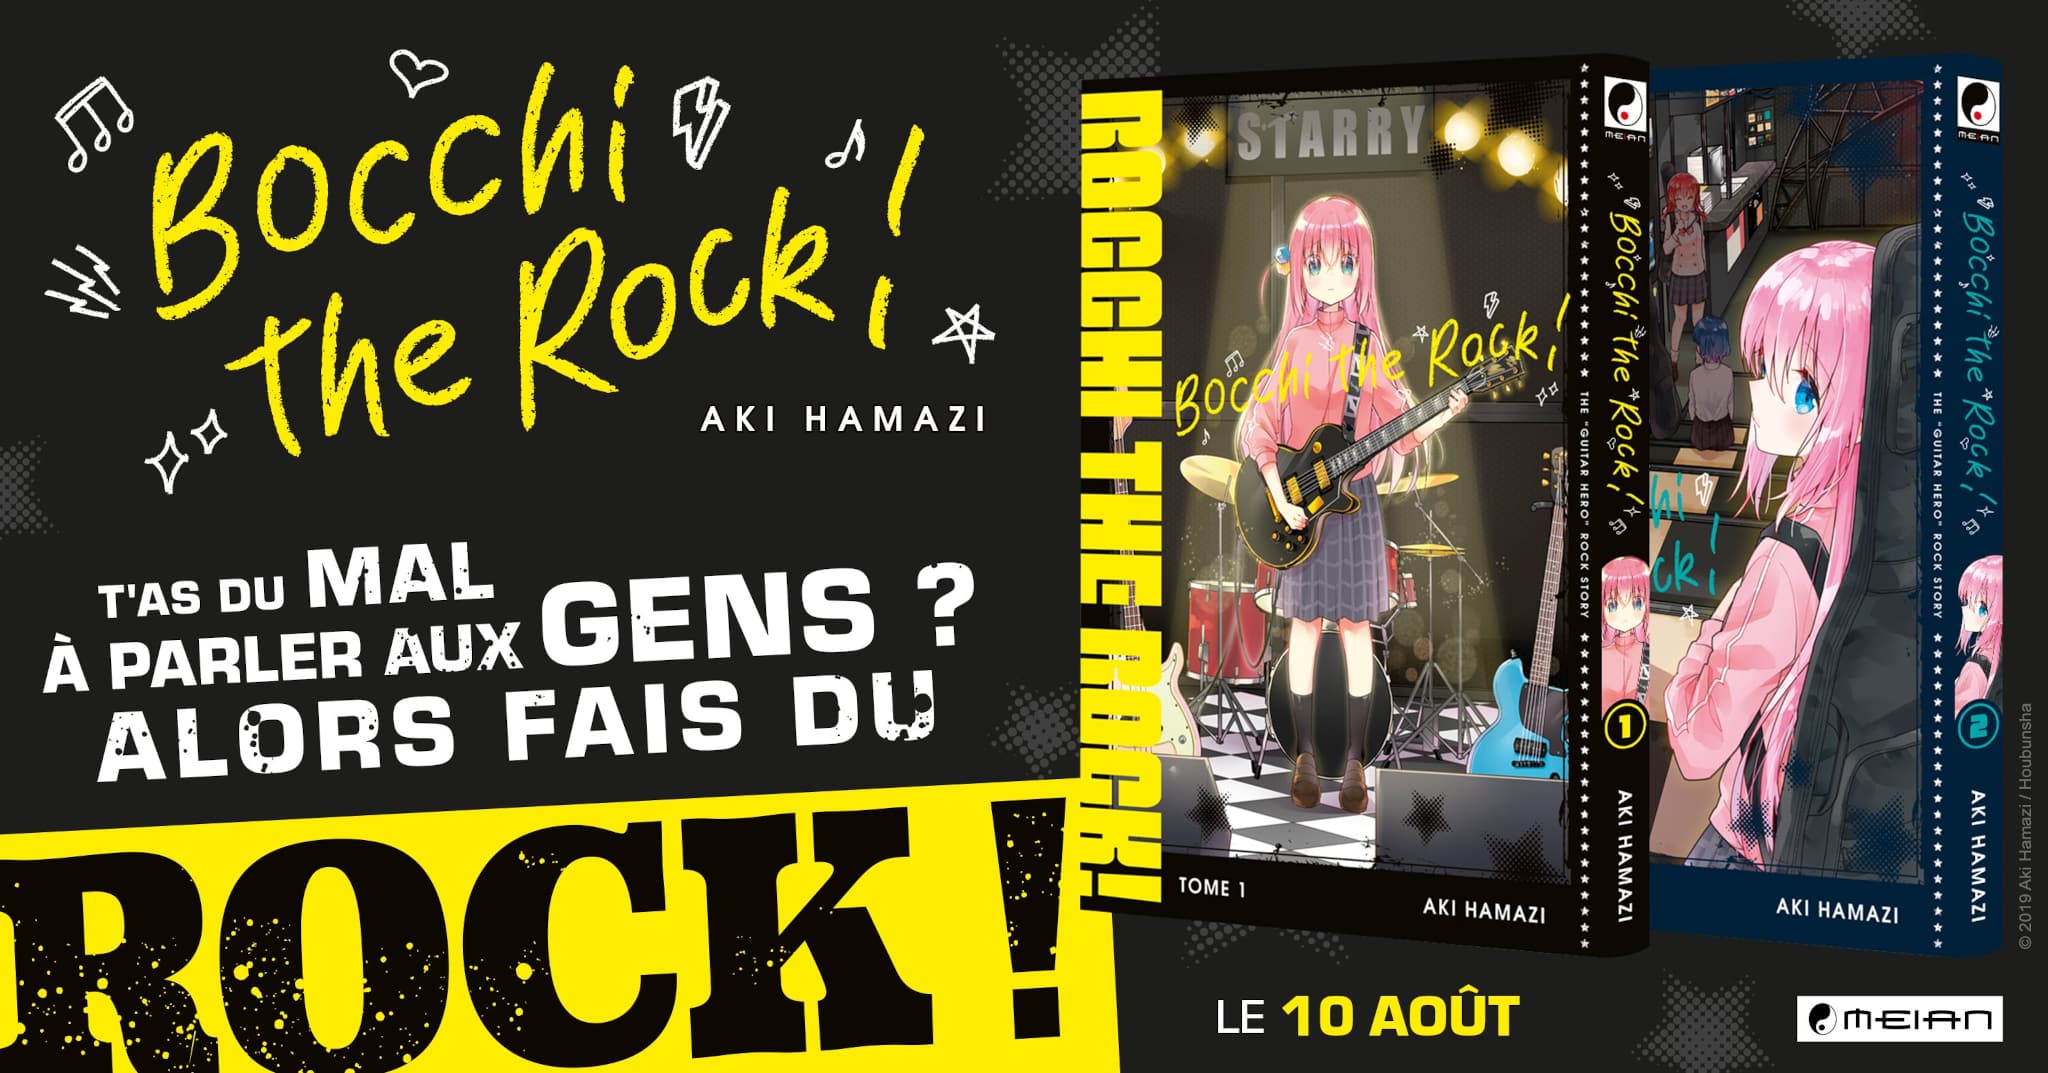 Annonce de la date de sortie en France du manga Bocchi the Rock aux éditions Meian